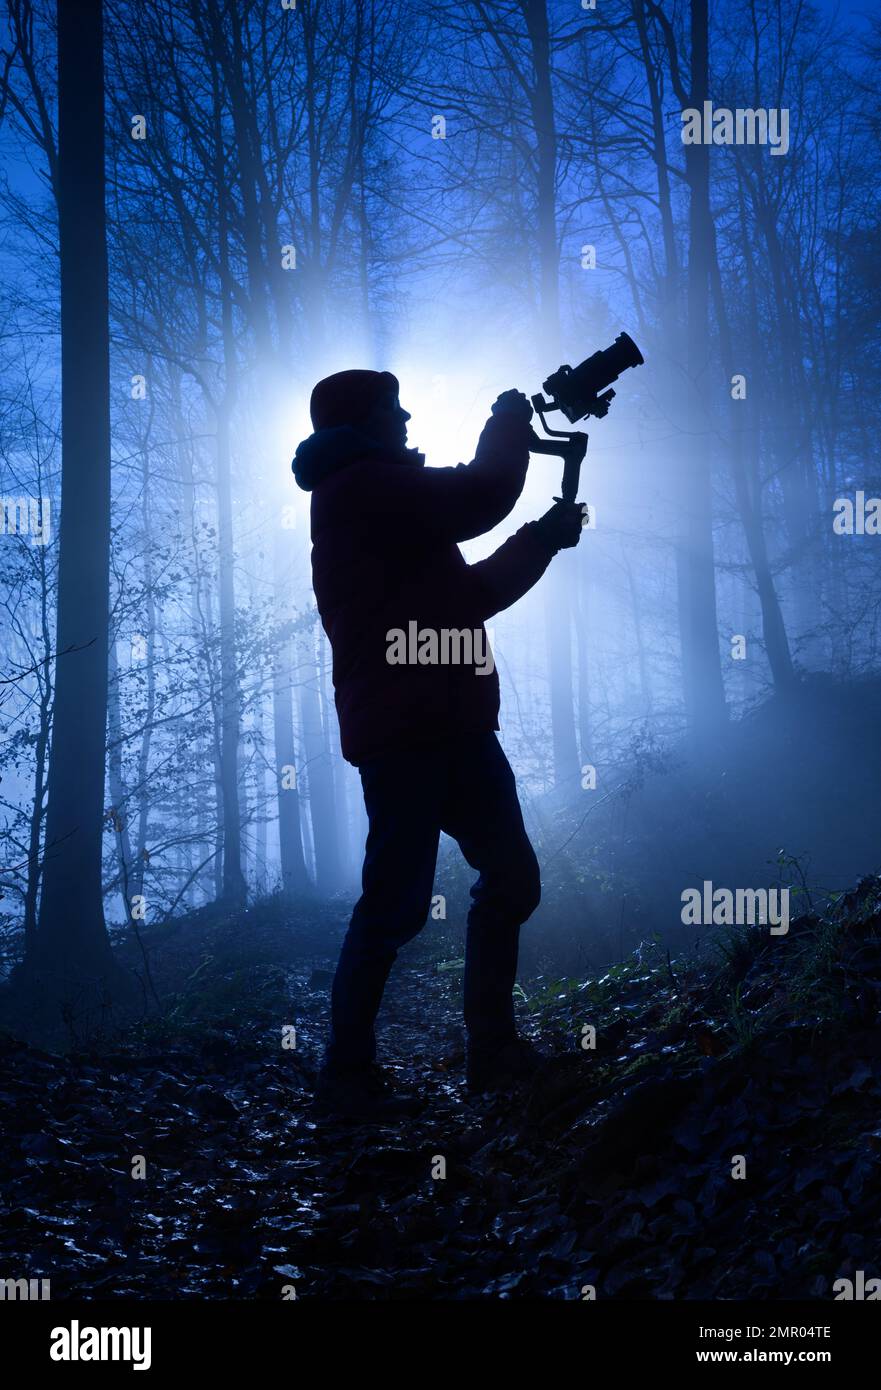 Silhouette d'un vidéaste dans une forêt brumeuse, rétro-éclairé de façon spectaculaire avec une couleur bleu froid et des rayons de lumière derrière lui Banque D'Images